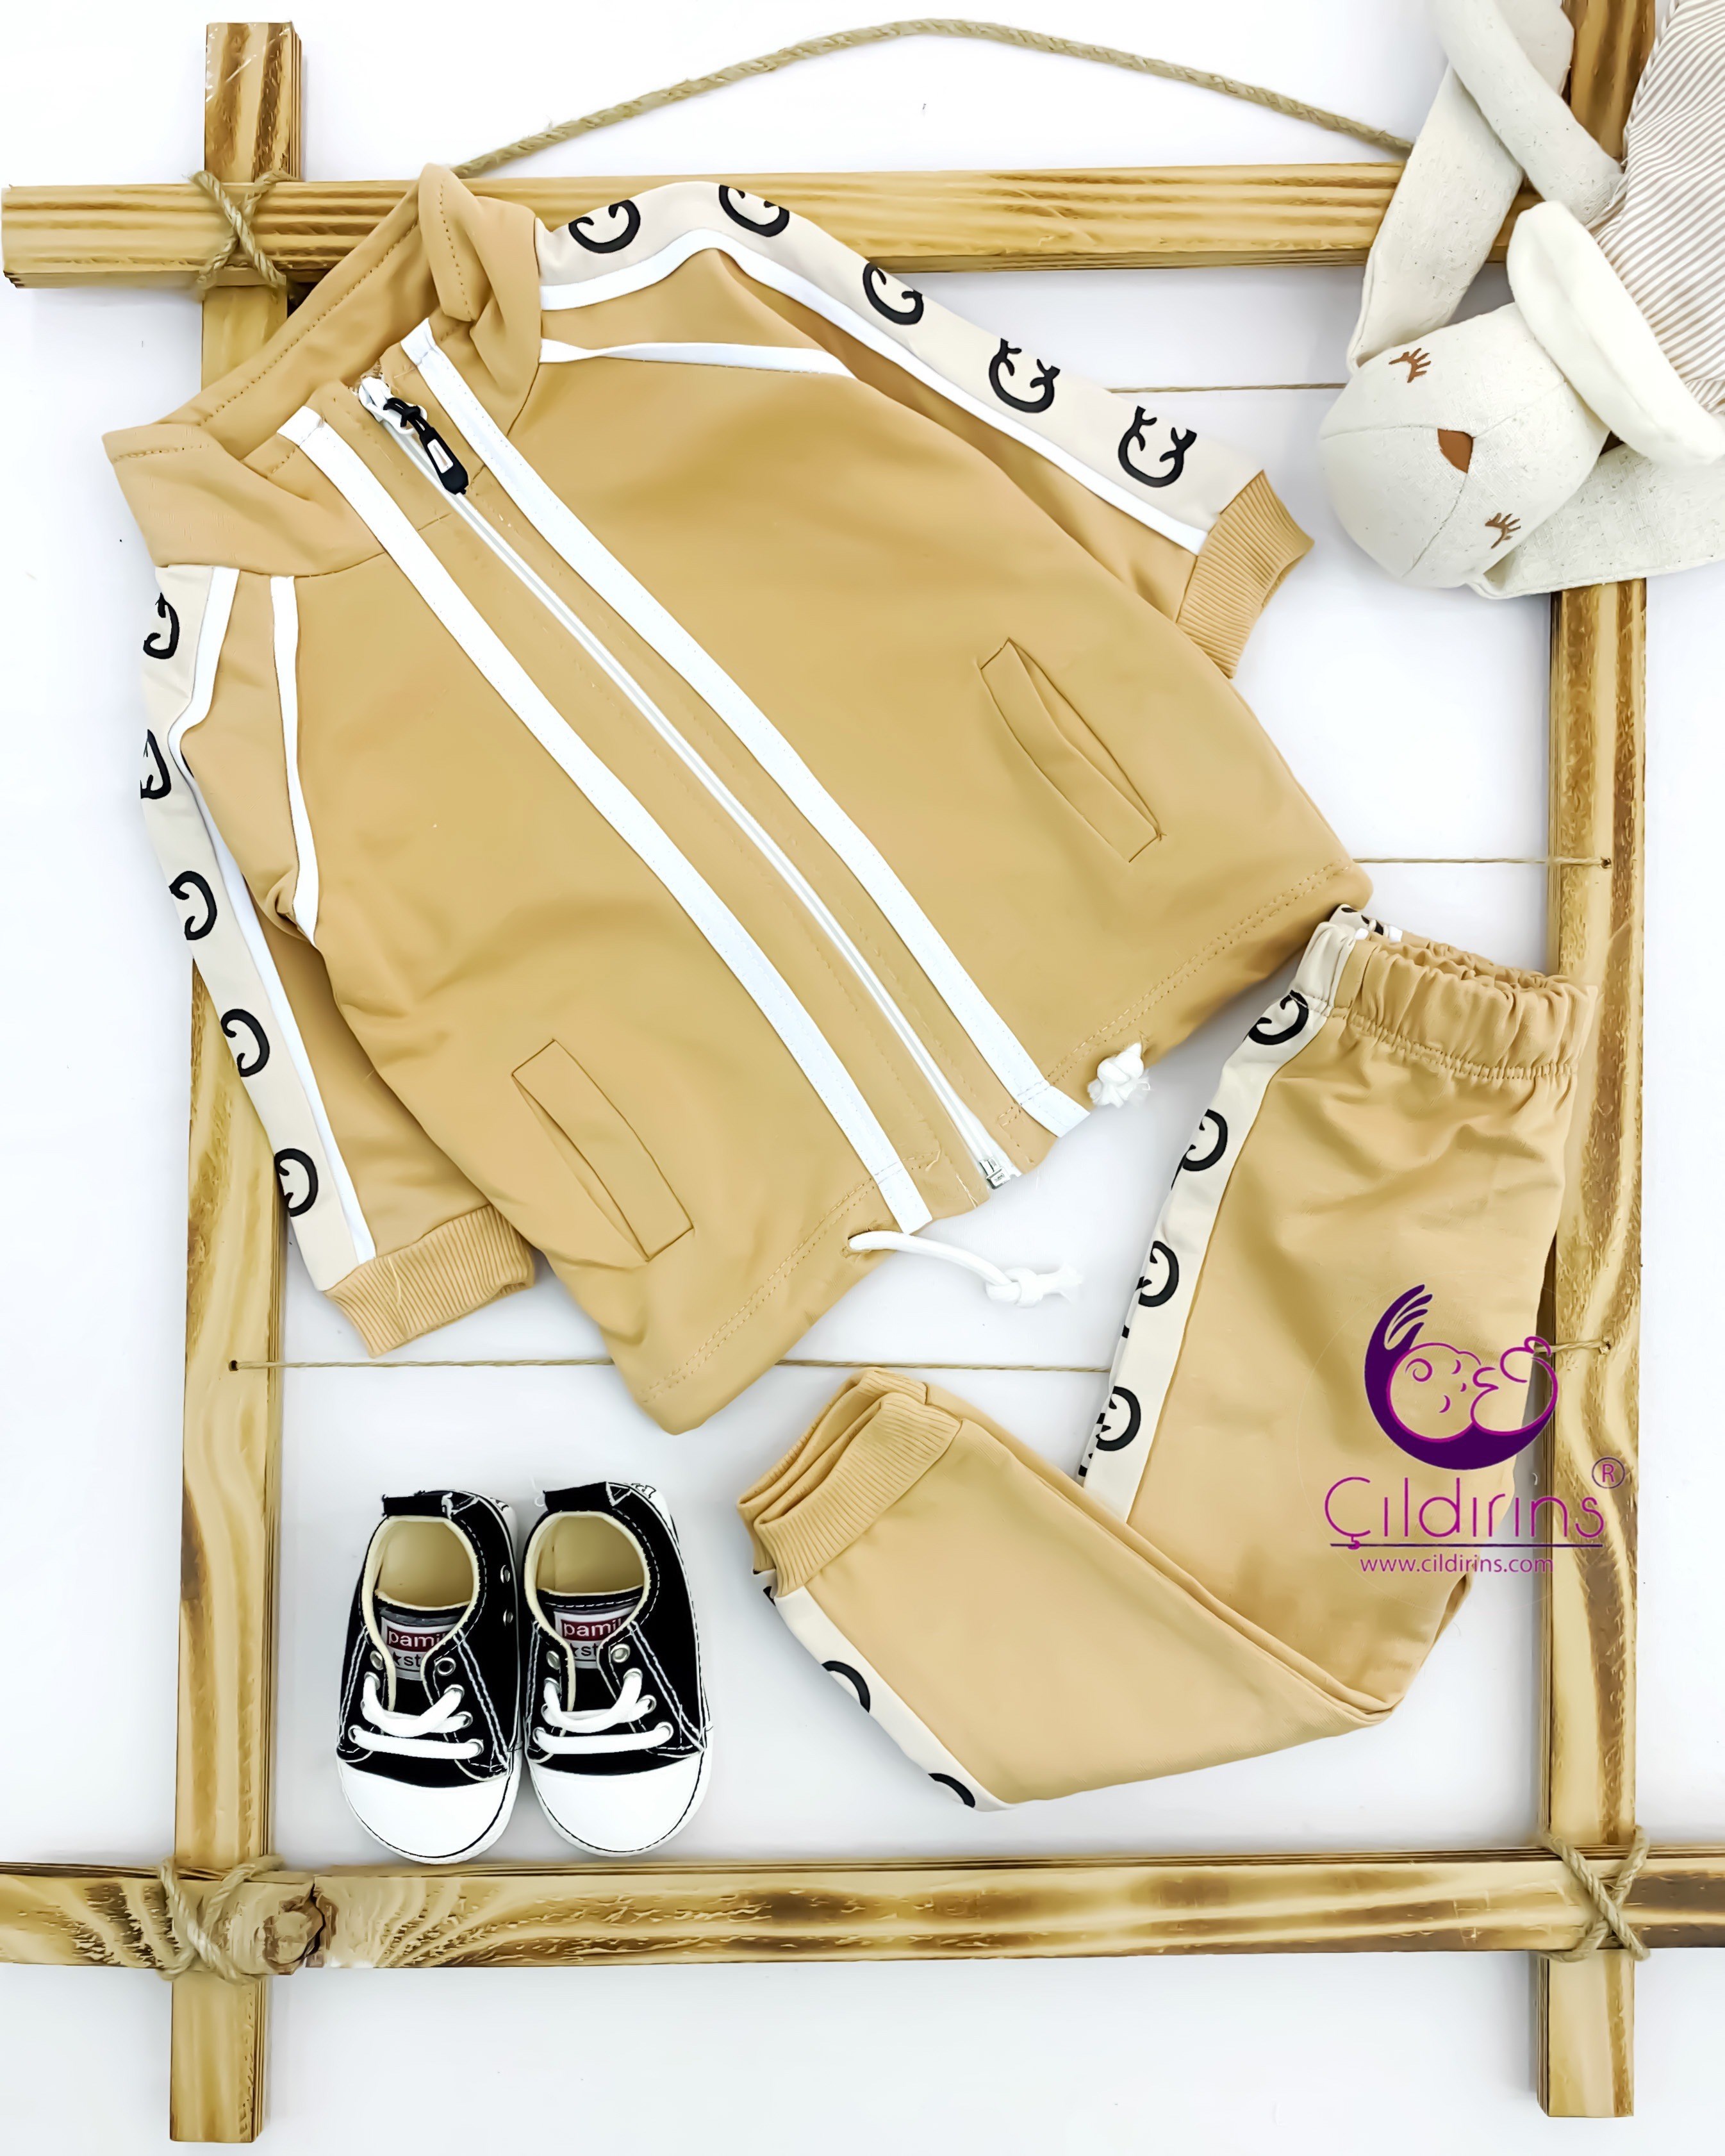 Miniapple Çift Şeritli Kolları ve Pantolonu Gucci Desenli 2’li Çocuk Takımı - KIRMIZI